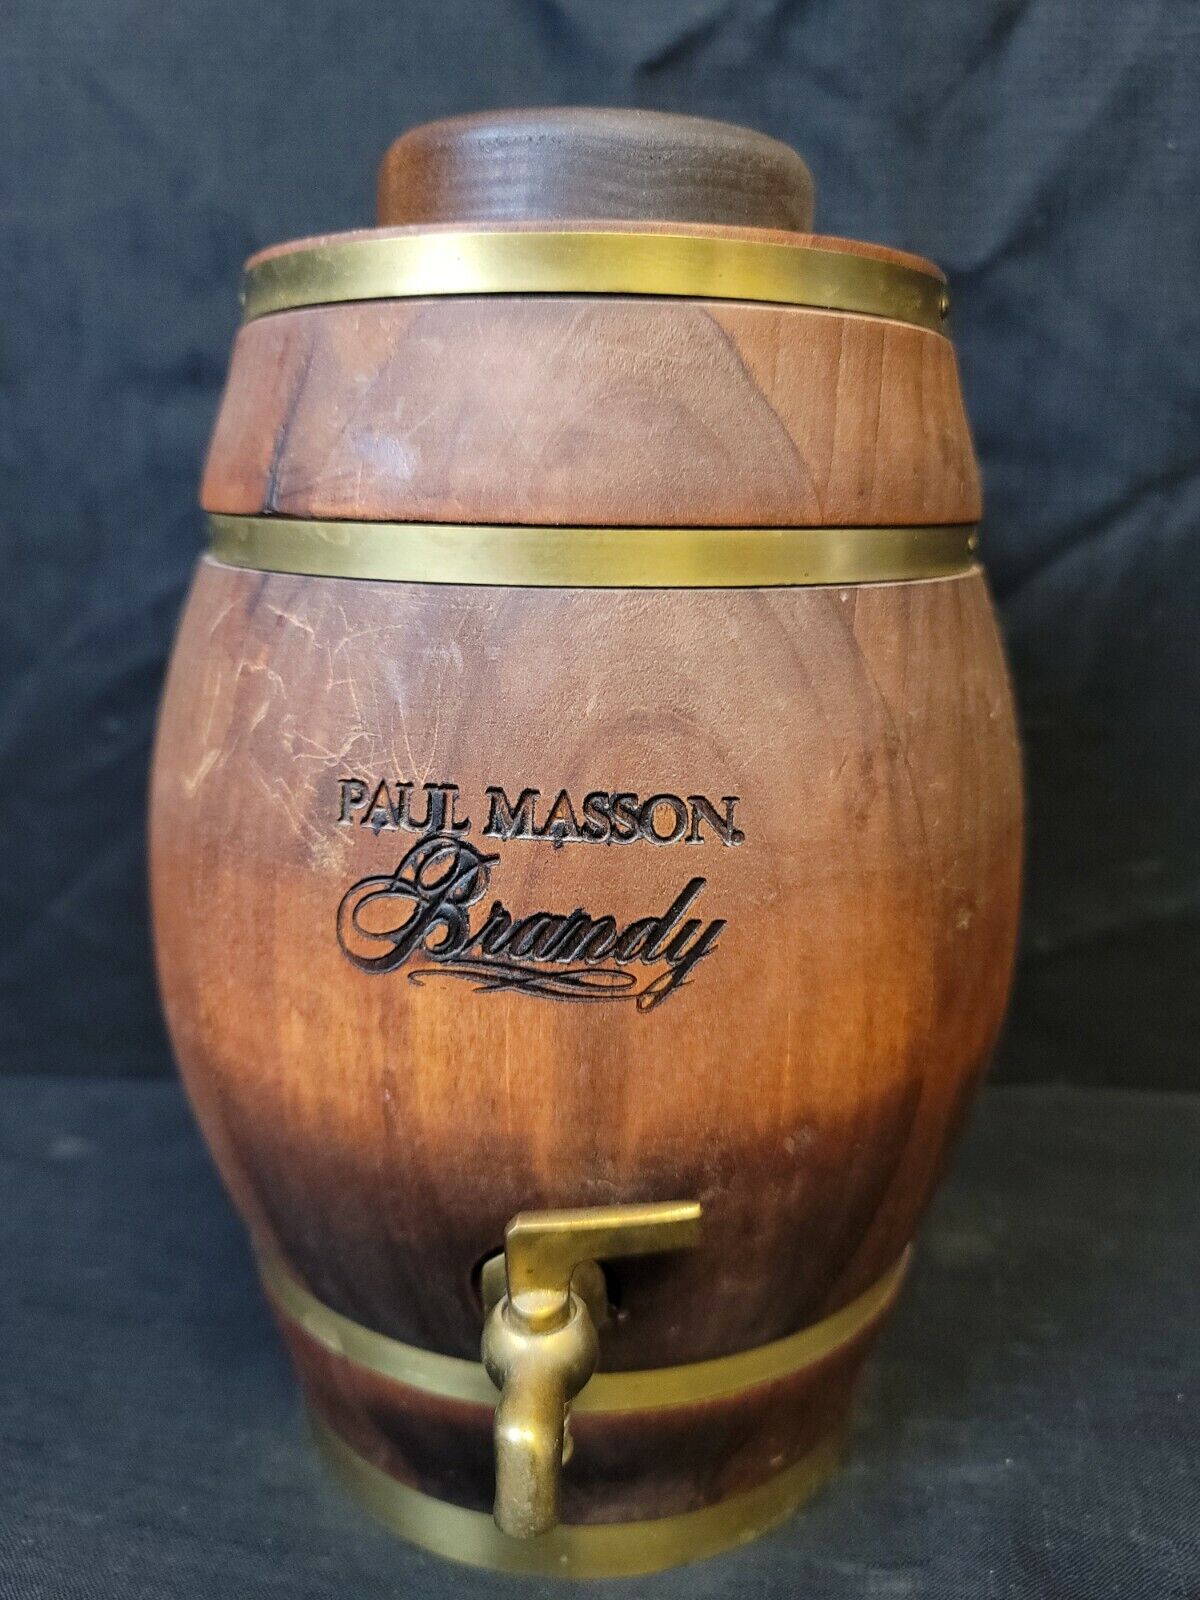 Paul Masson Brandy Barrel Advertising Dispenser Decanter Glass Jar Brass Spigot